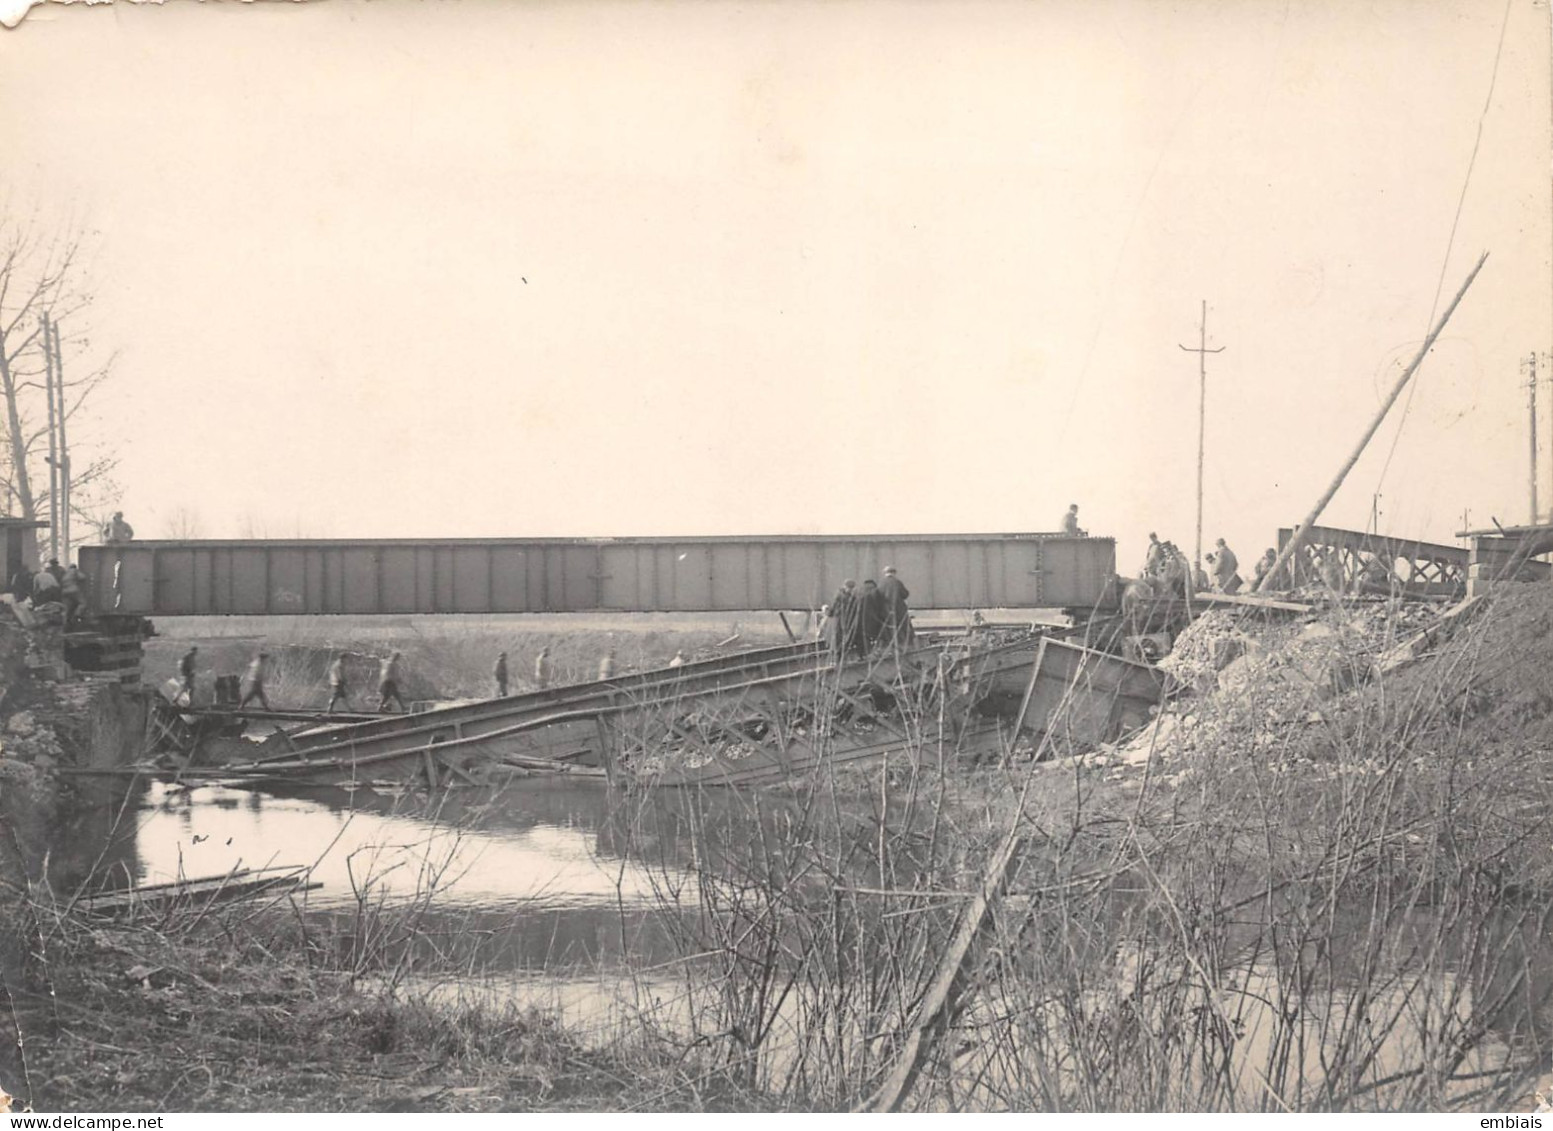 DERCY Chemin de fer Guerre 14/18 - Photo du pont détruit sur la Serre lors d'une inspection militaire Nov1918